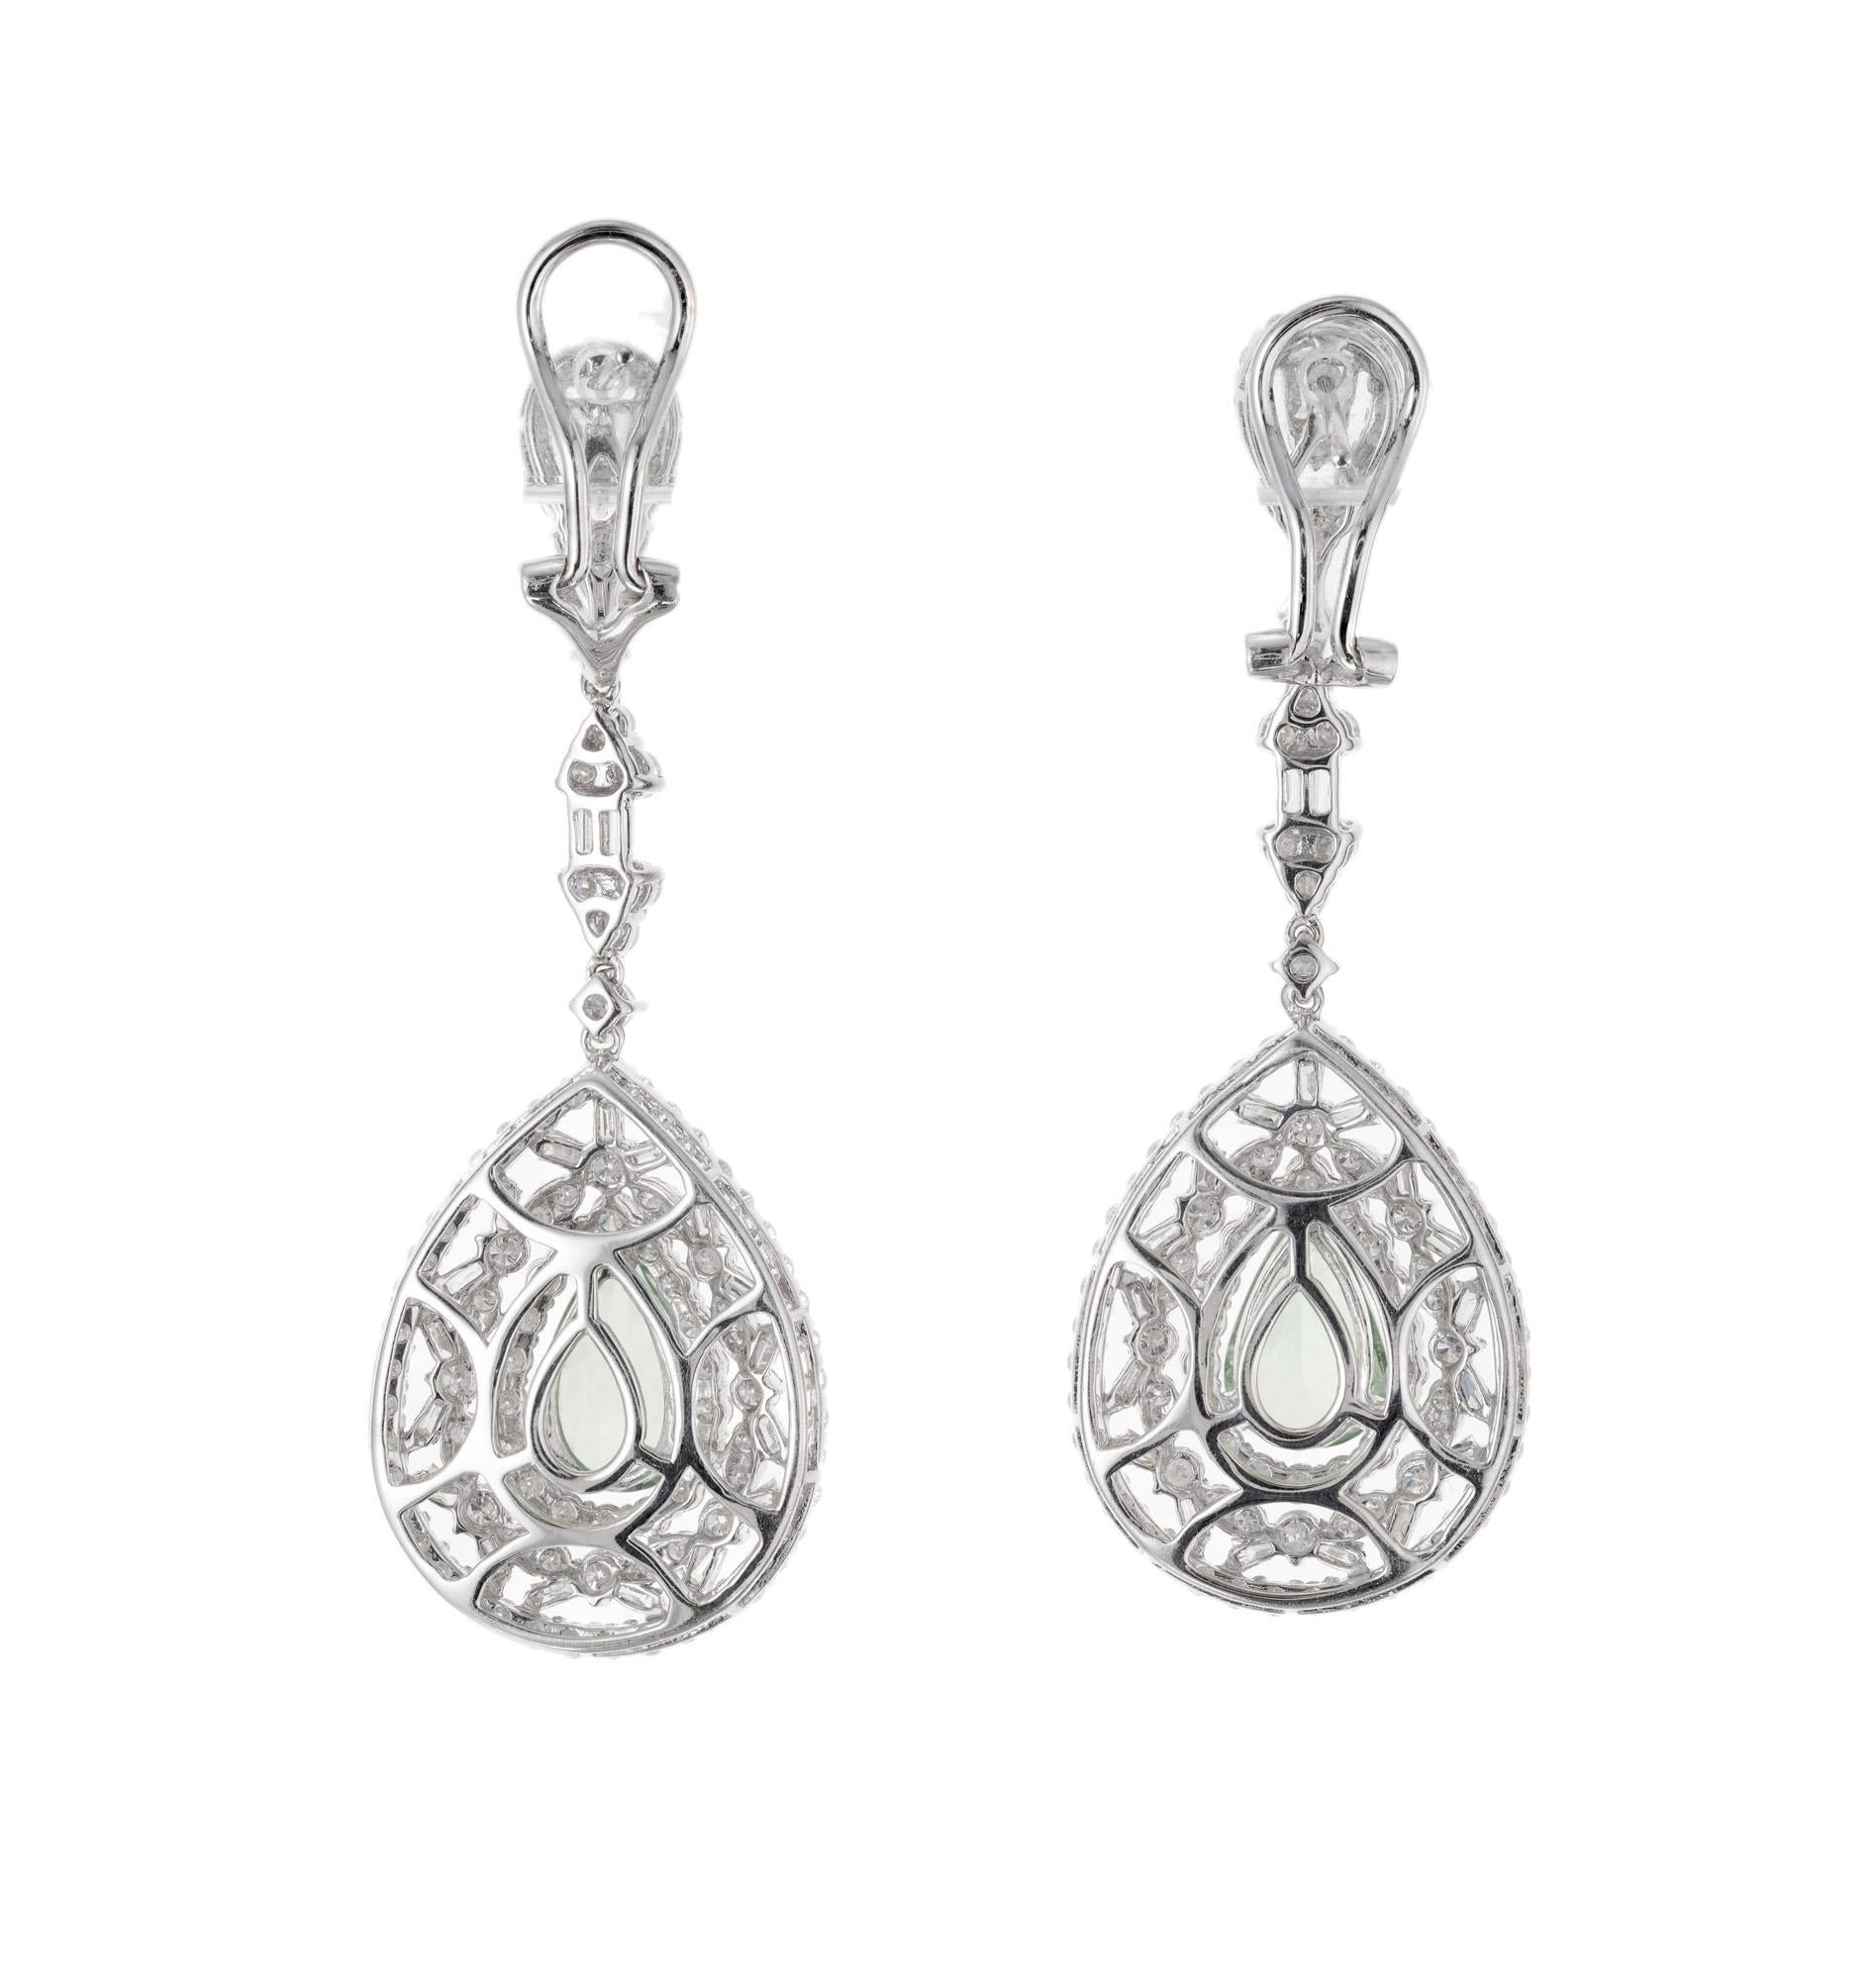 Pear Cut GIA Certified 3.50 Carat Tsavorite Garnet Diamond Gold Dangle Drop Earrings For Sale